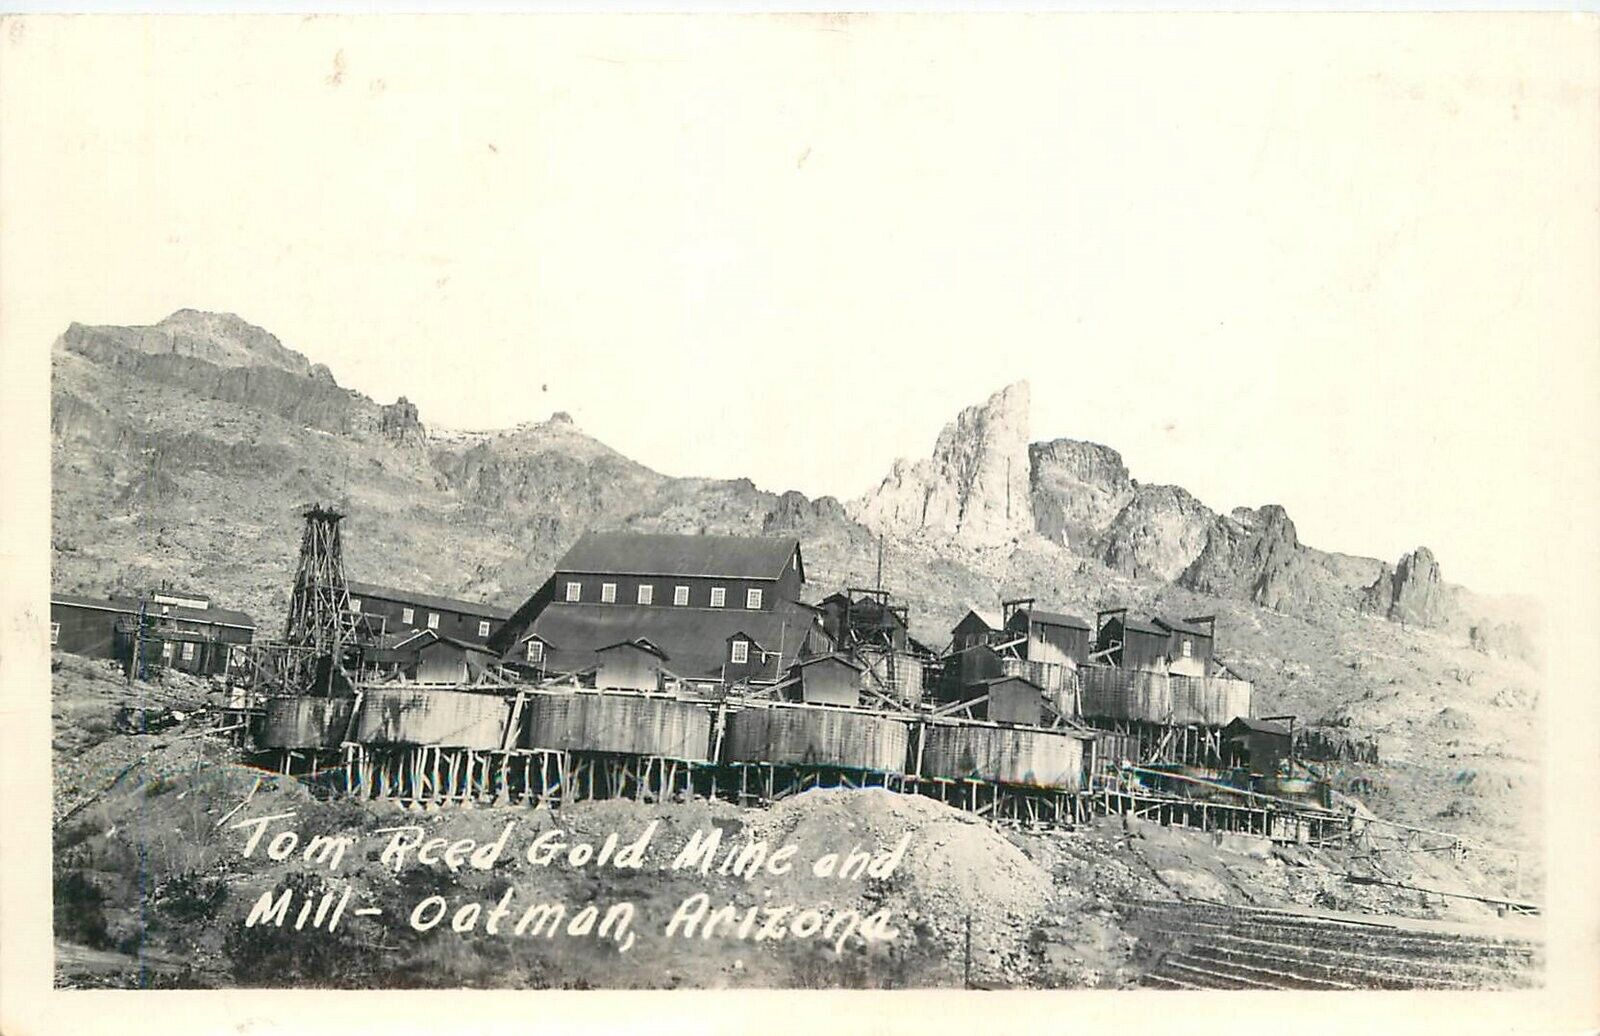 Postcard RPPC 1930s Arizona Oatman Tom Reed Gold Mine mining occupation 23-11163